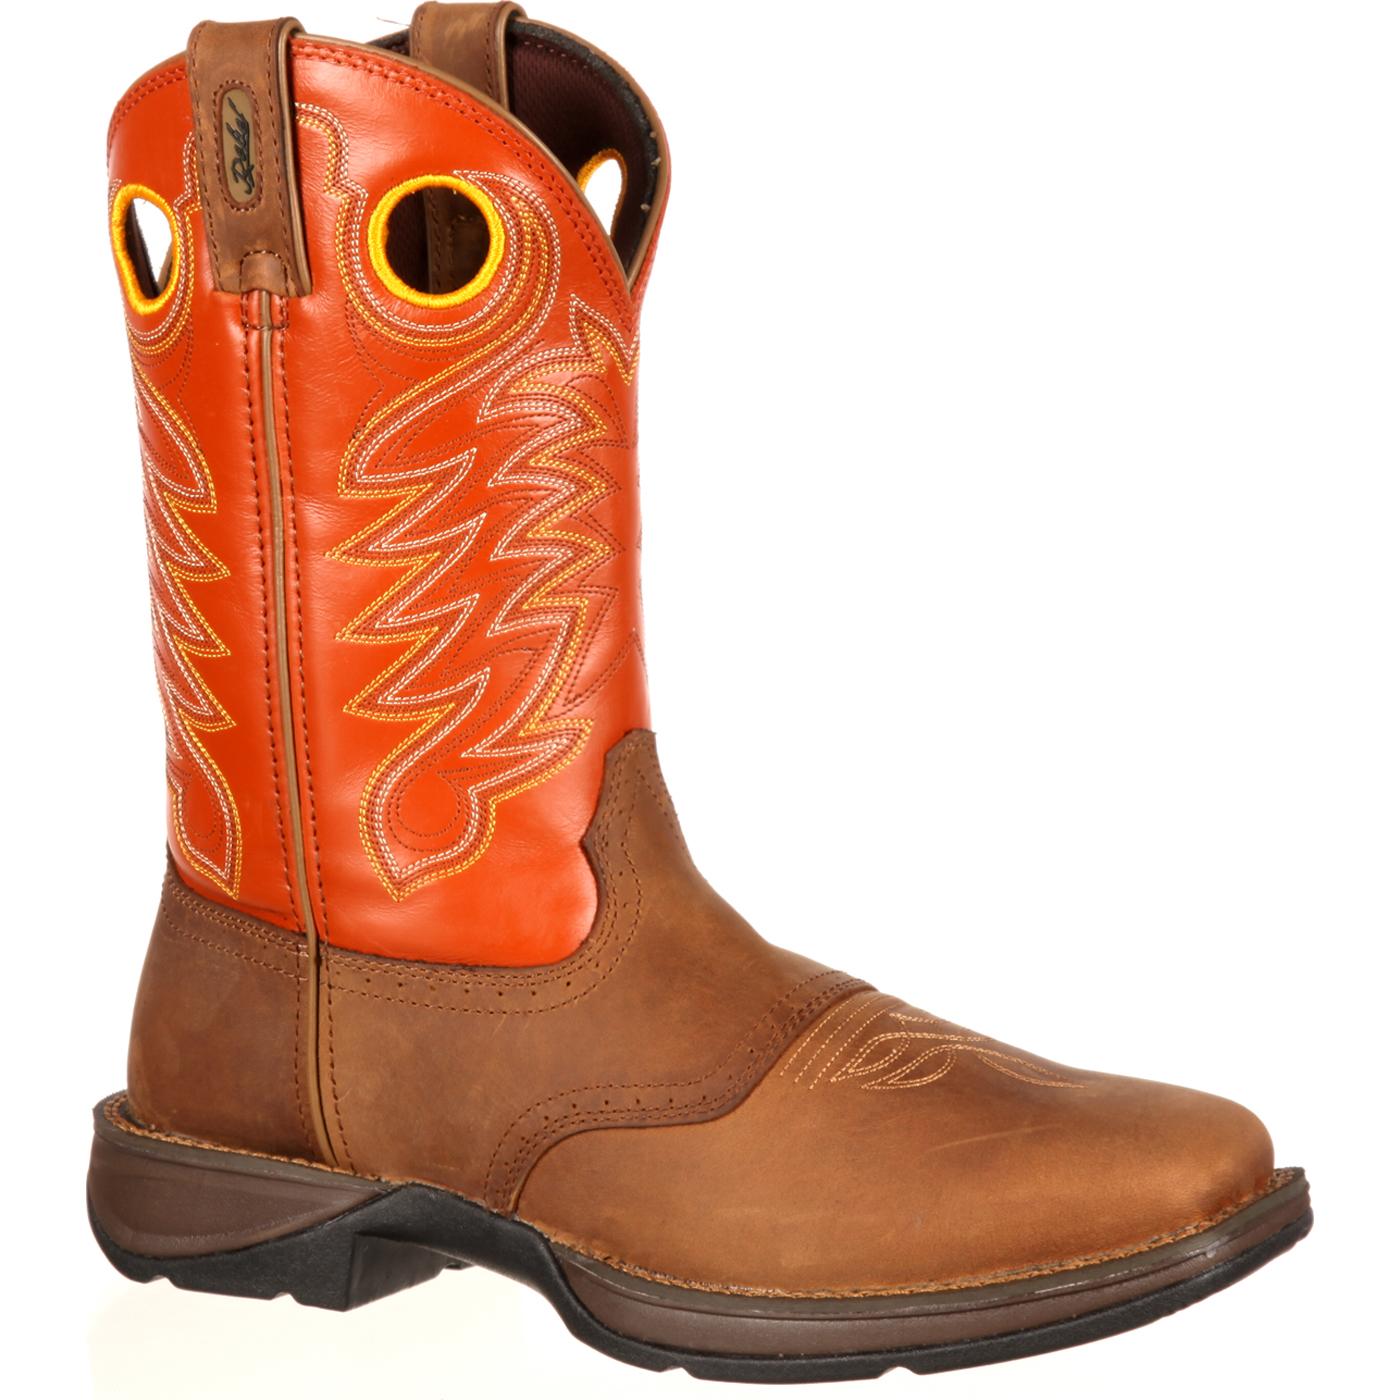 Rebel by Durango: Men's Orange Tan Saddle Western Boot